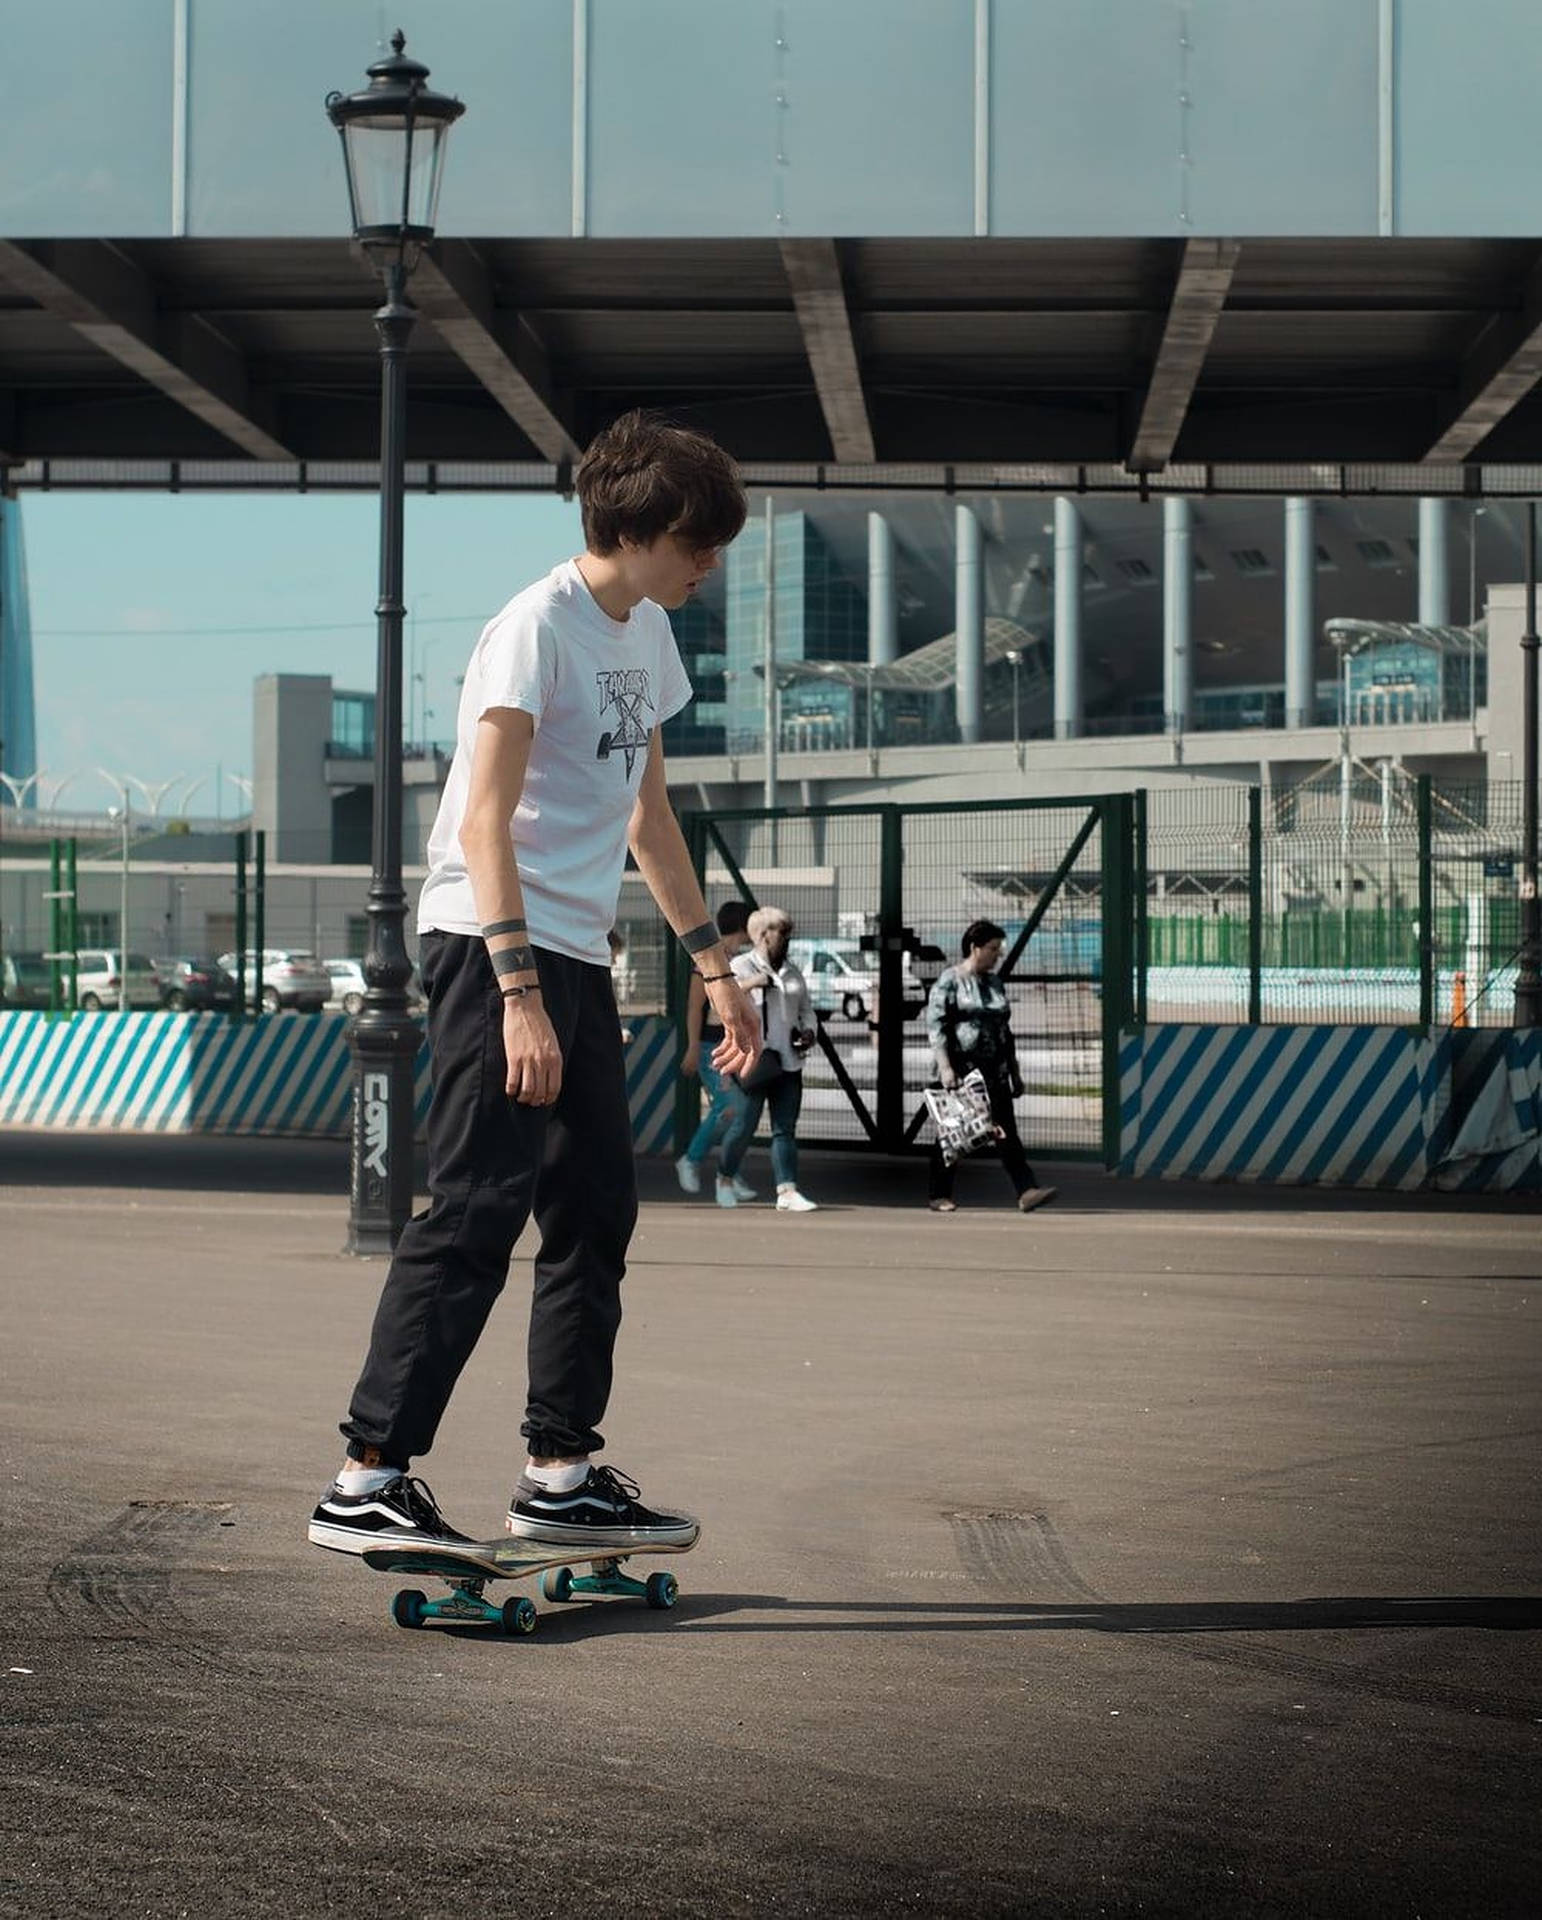 Aesthetic Skater Boy Portrait Wallpaper